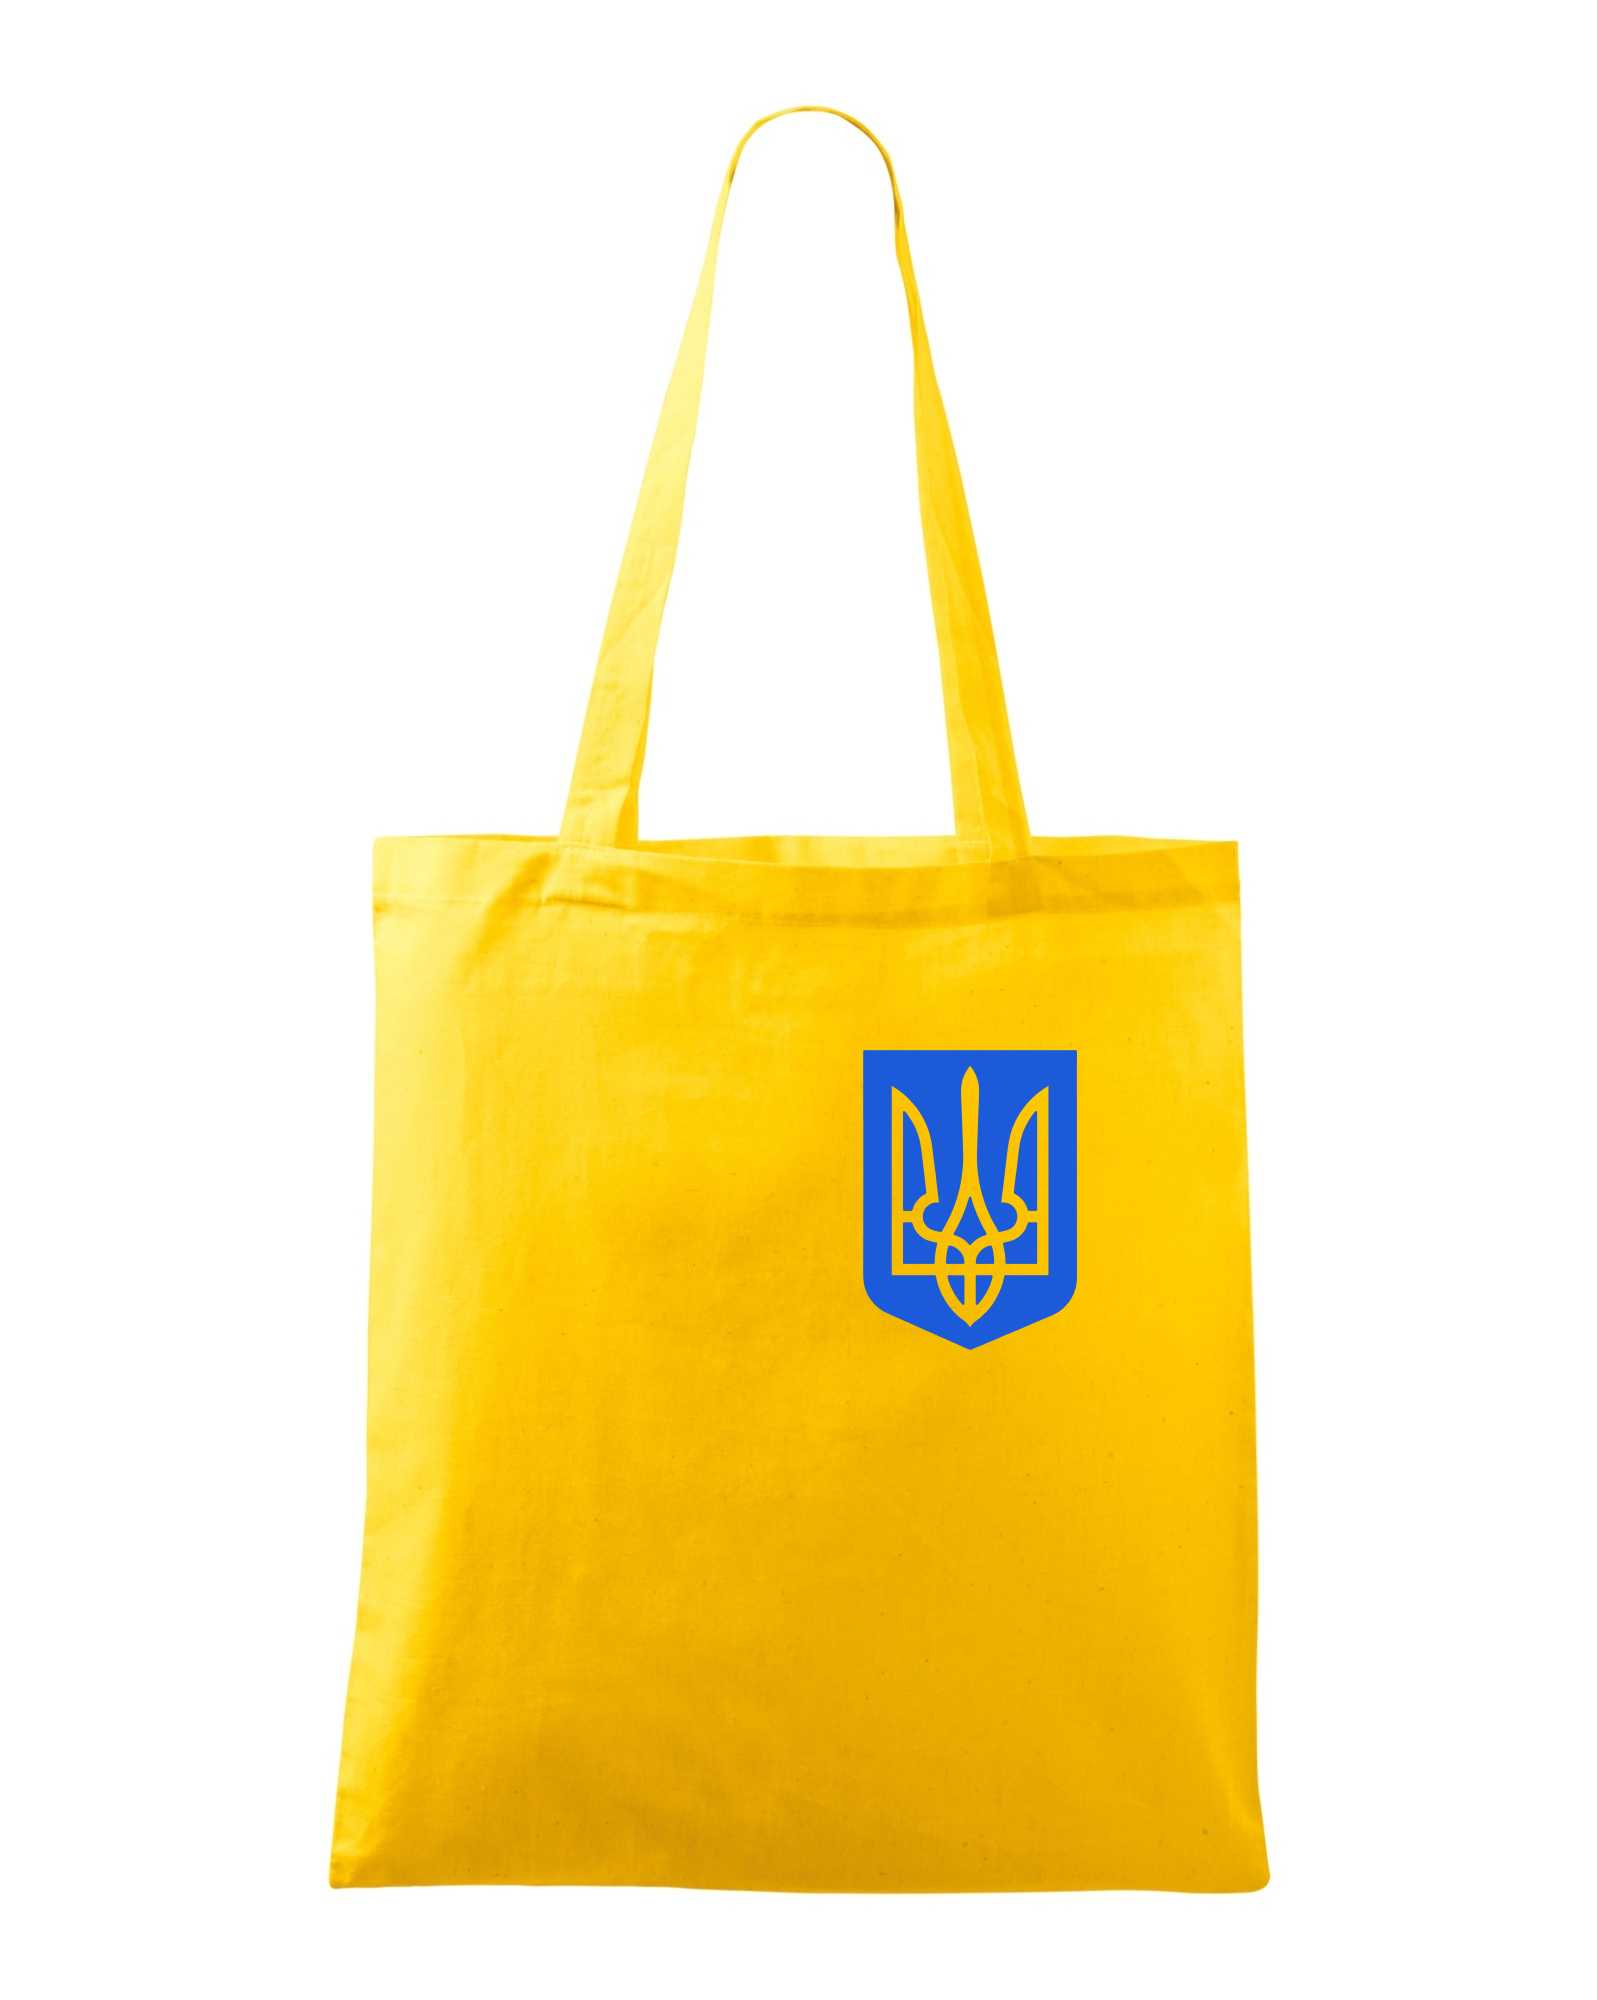 Ukrajina - Modrý znak na prsu - Taška malá